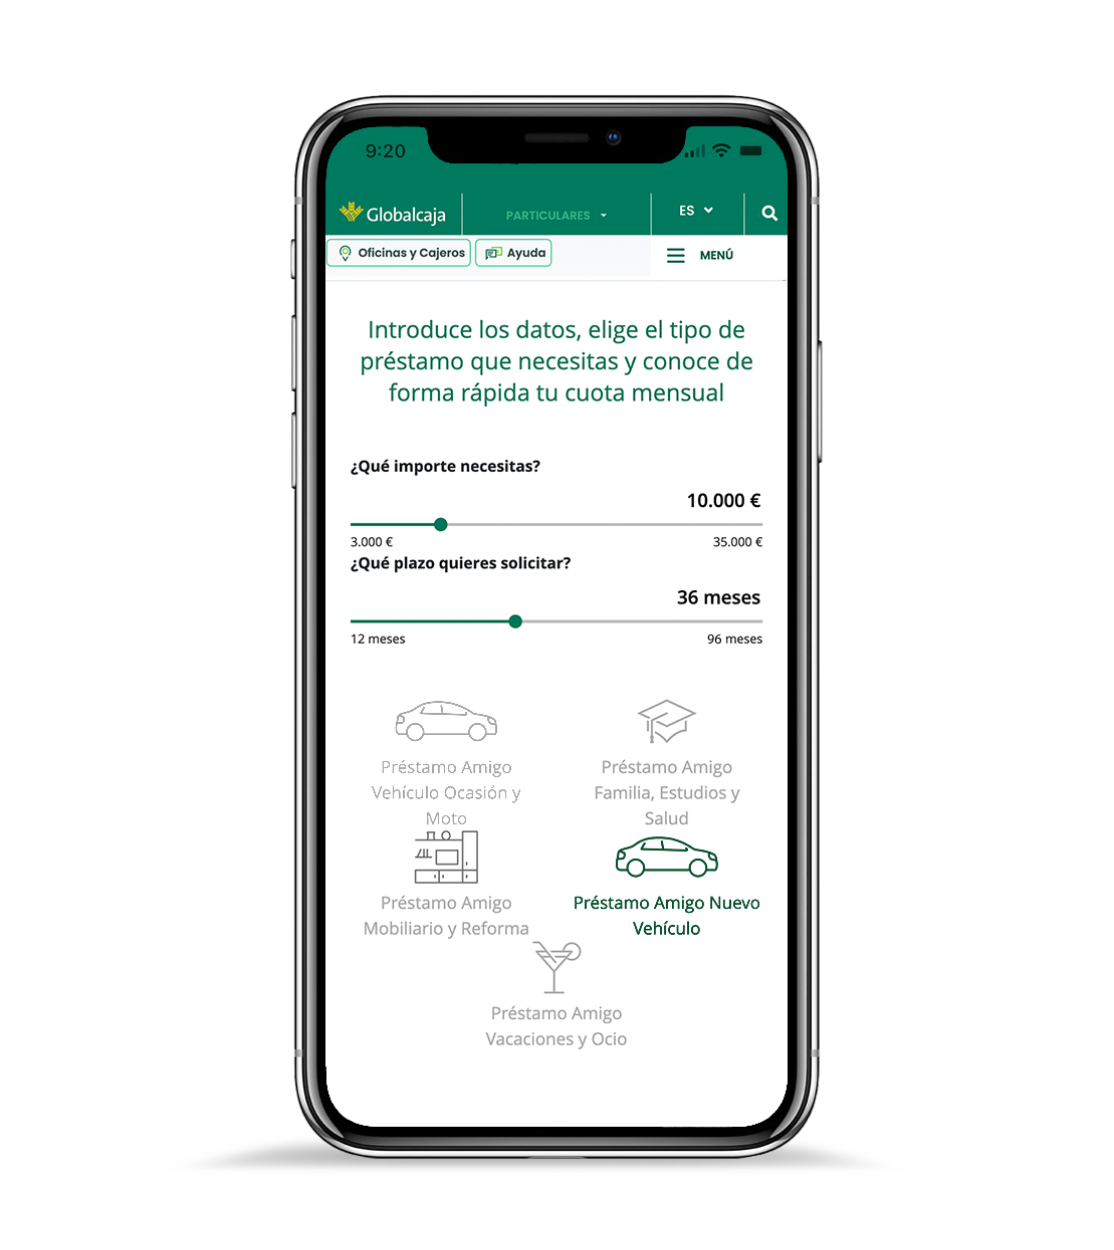 teléfono móvil con la página web de Globalcaja, donde la gente puede simular su préstamo personal y conocer la cuota en un minuto